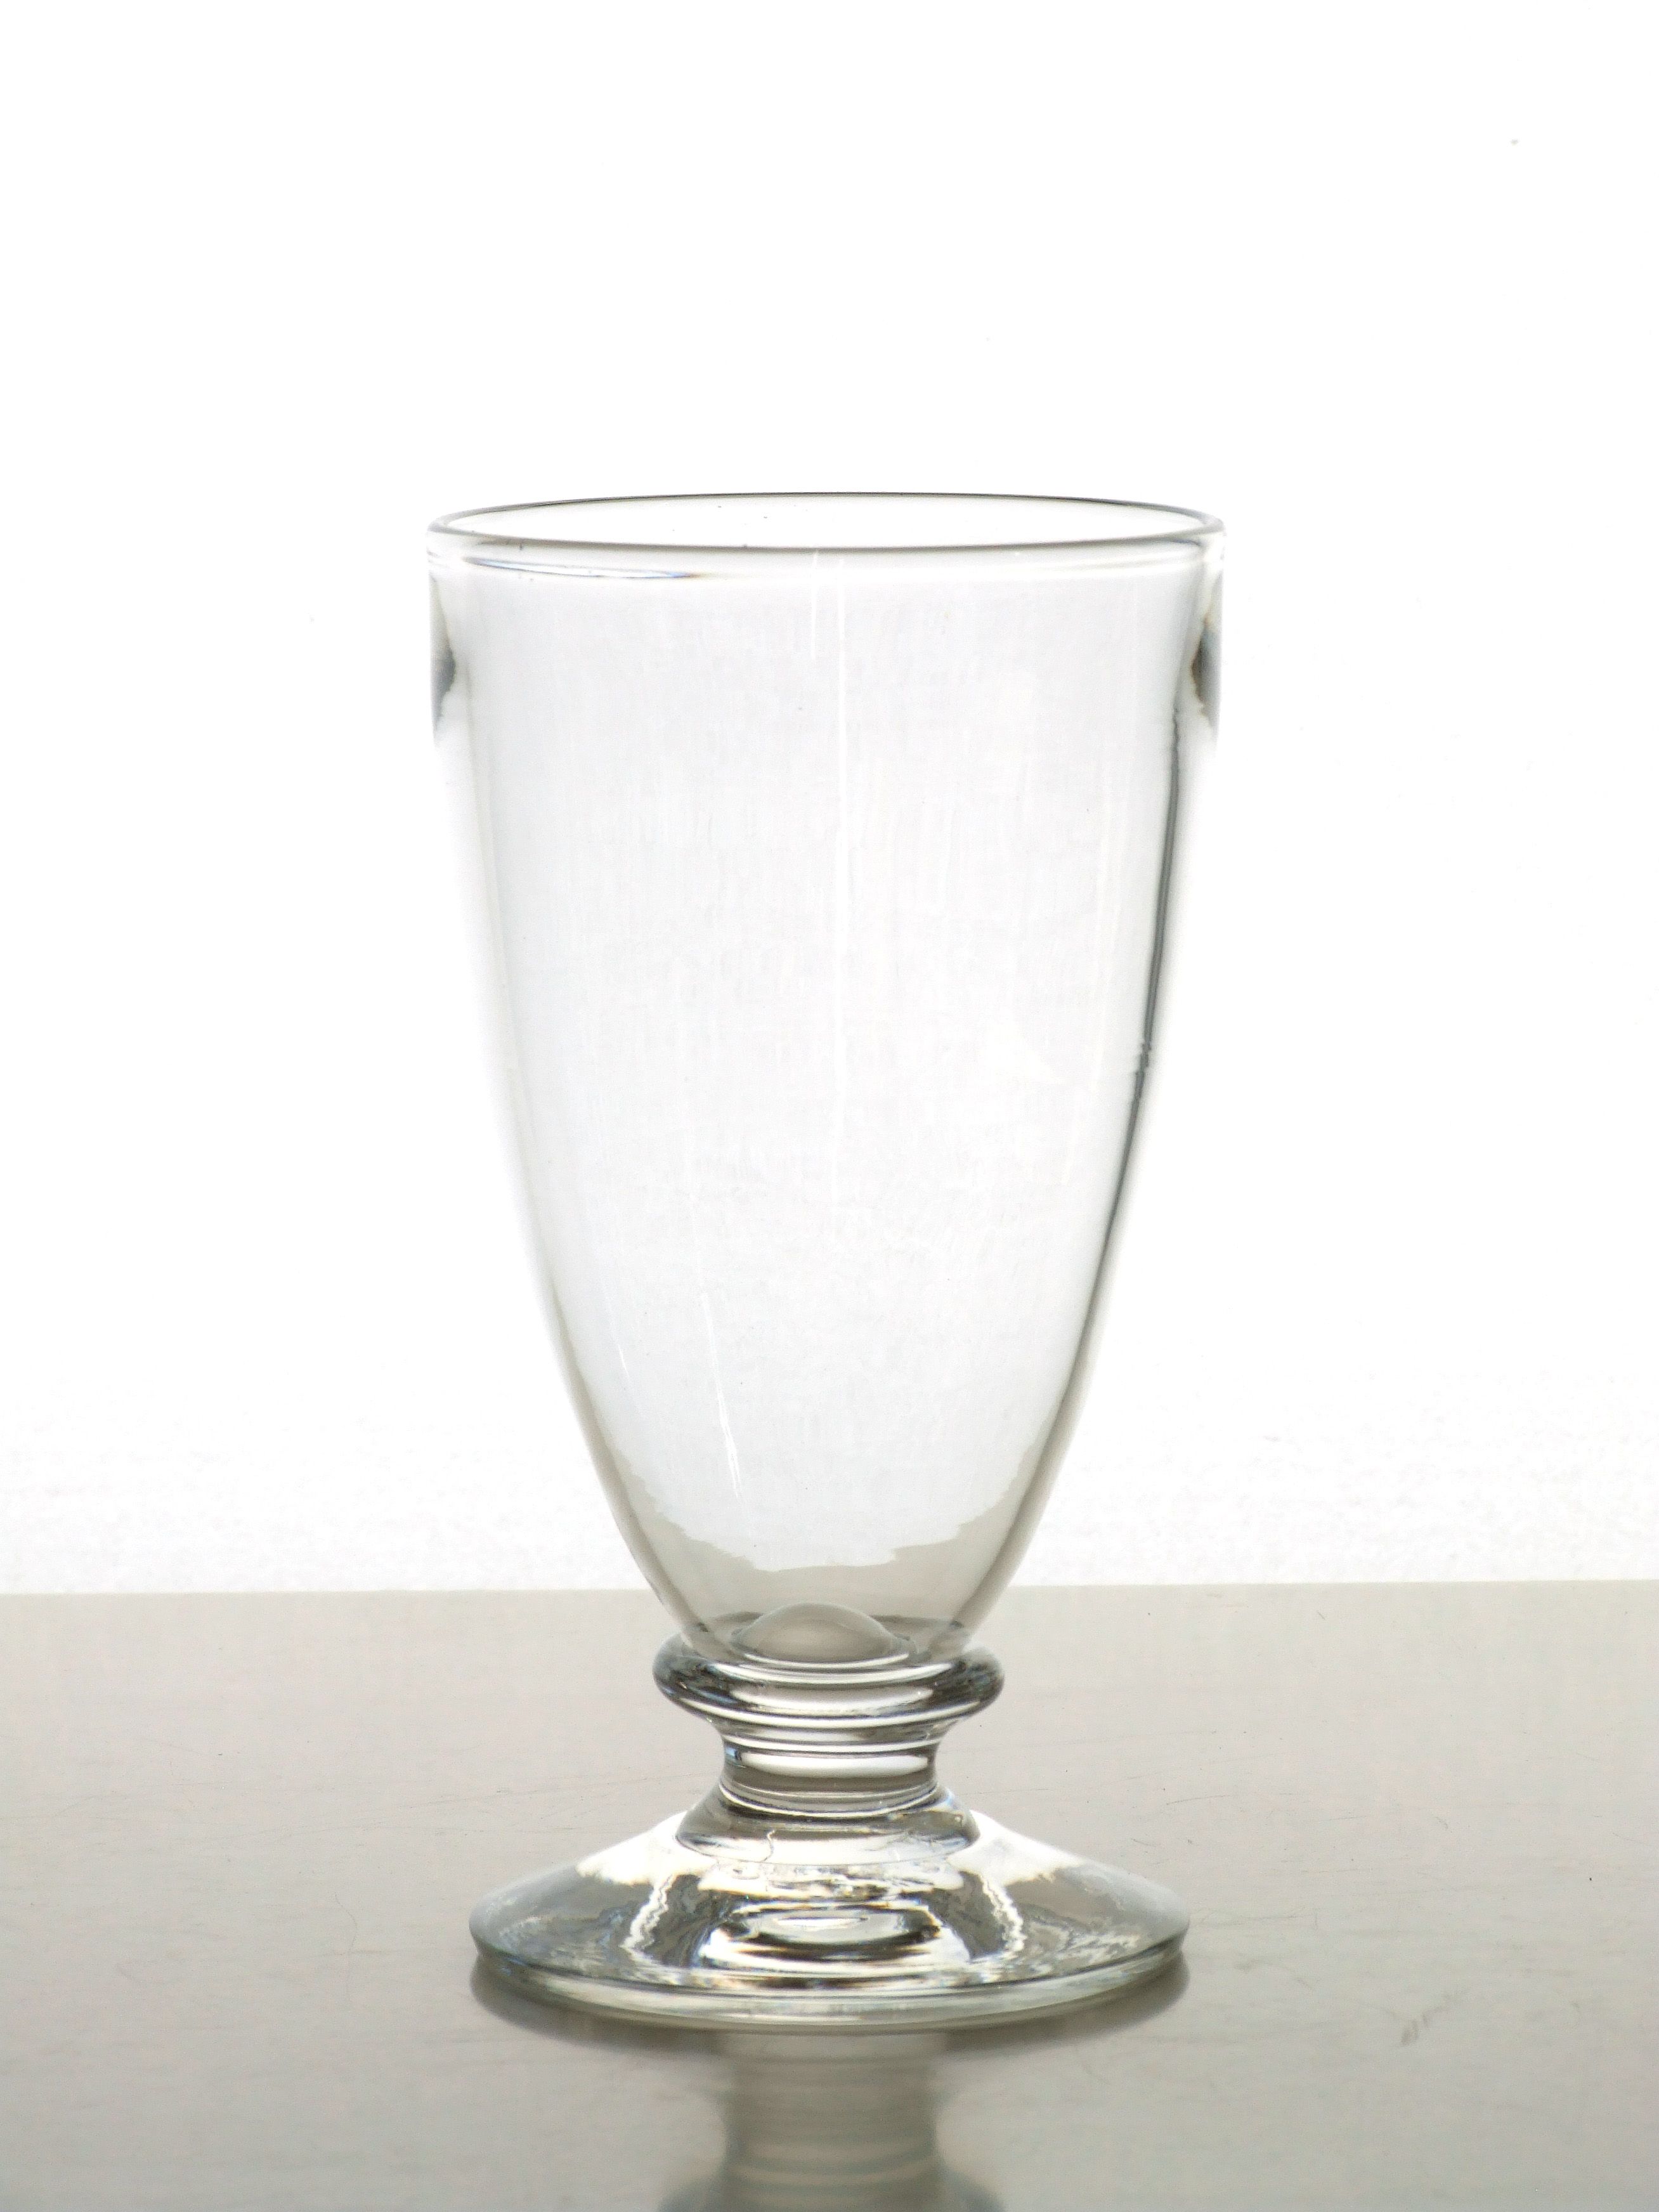 Ale Glass